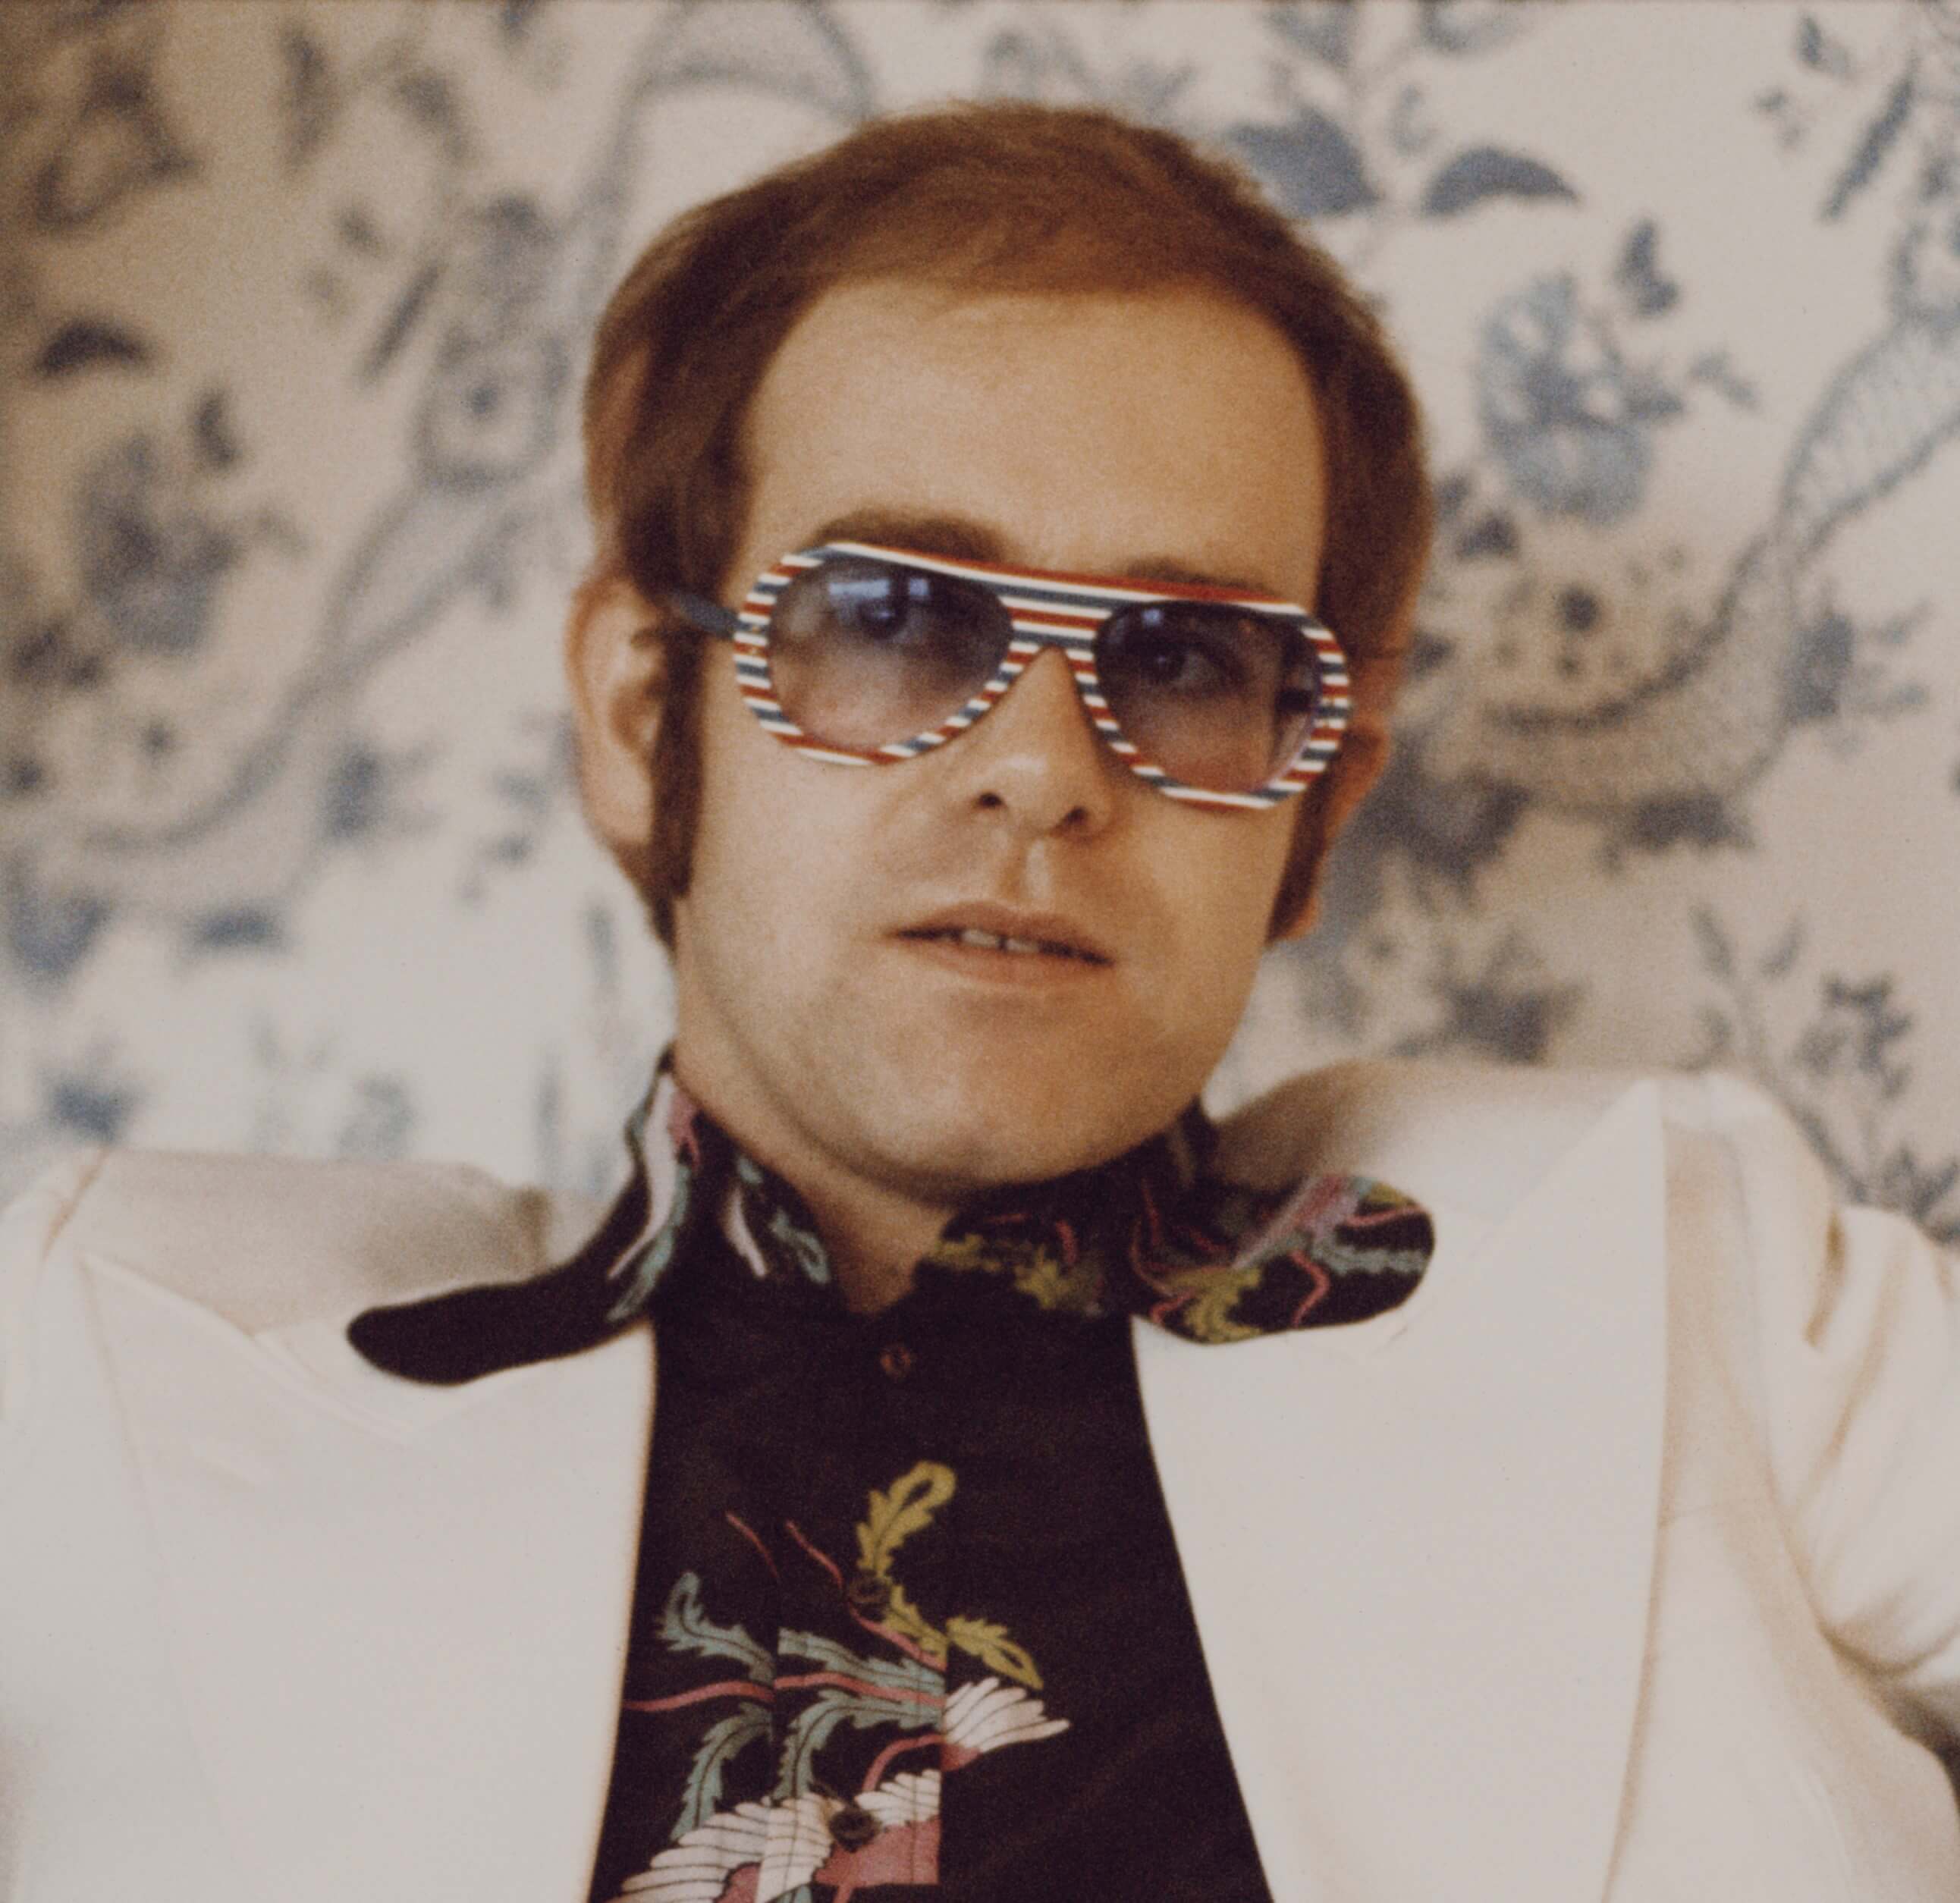 Elton John wearing a white suit